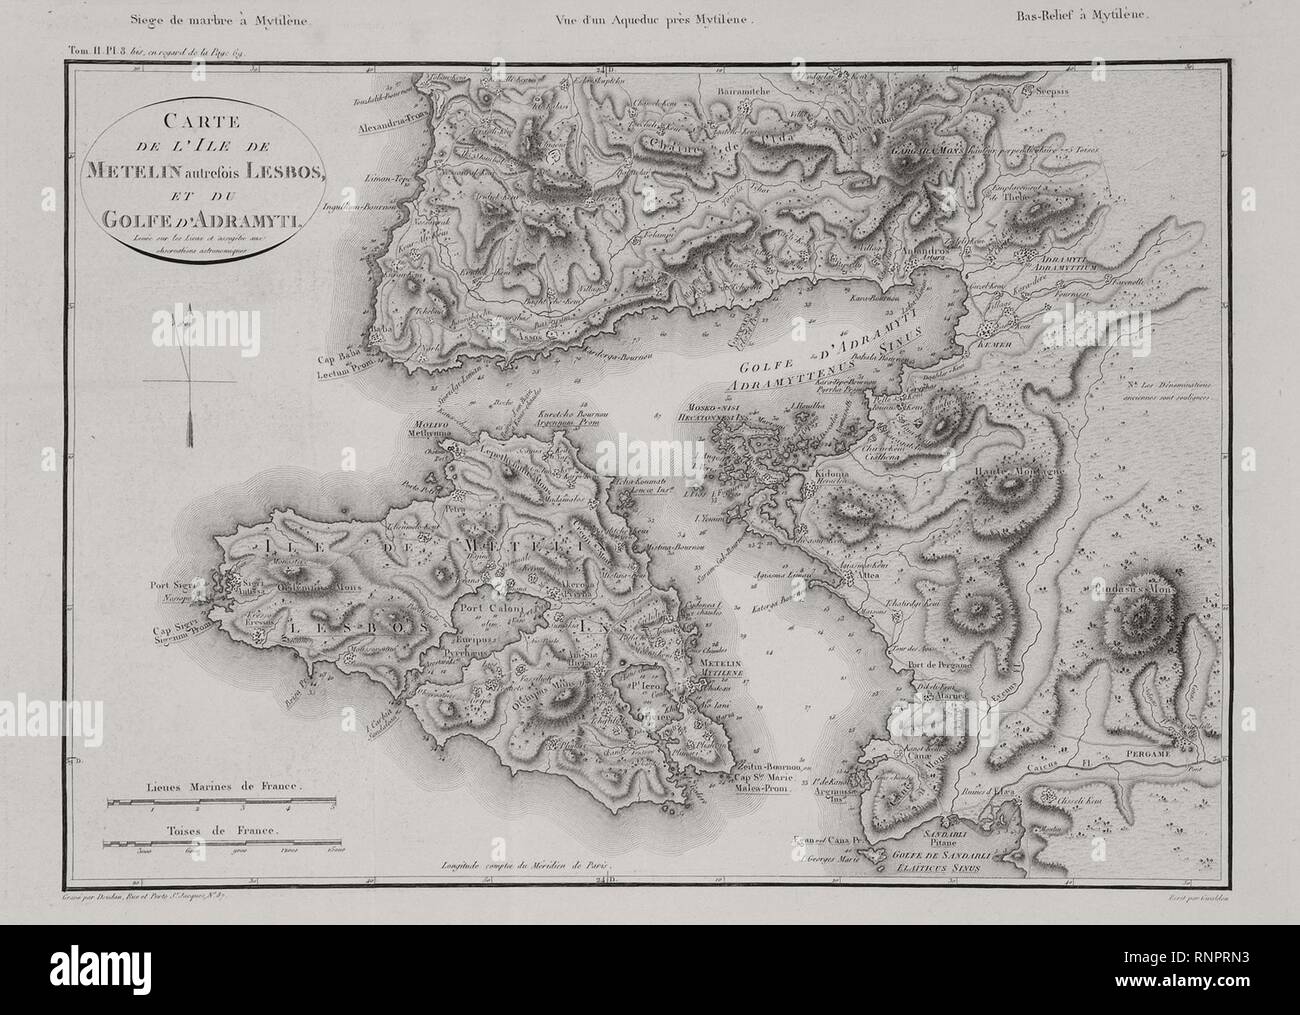 Carte de l'ile de Metelin autrefois Lesbo, et du Golfe d'Adramyti - Choiseul-gouffier Gabriel Florent Auguste De - 1809. Foto Stock